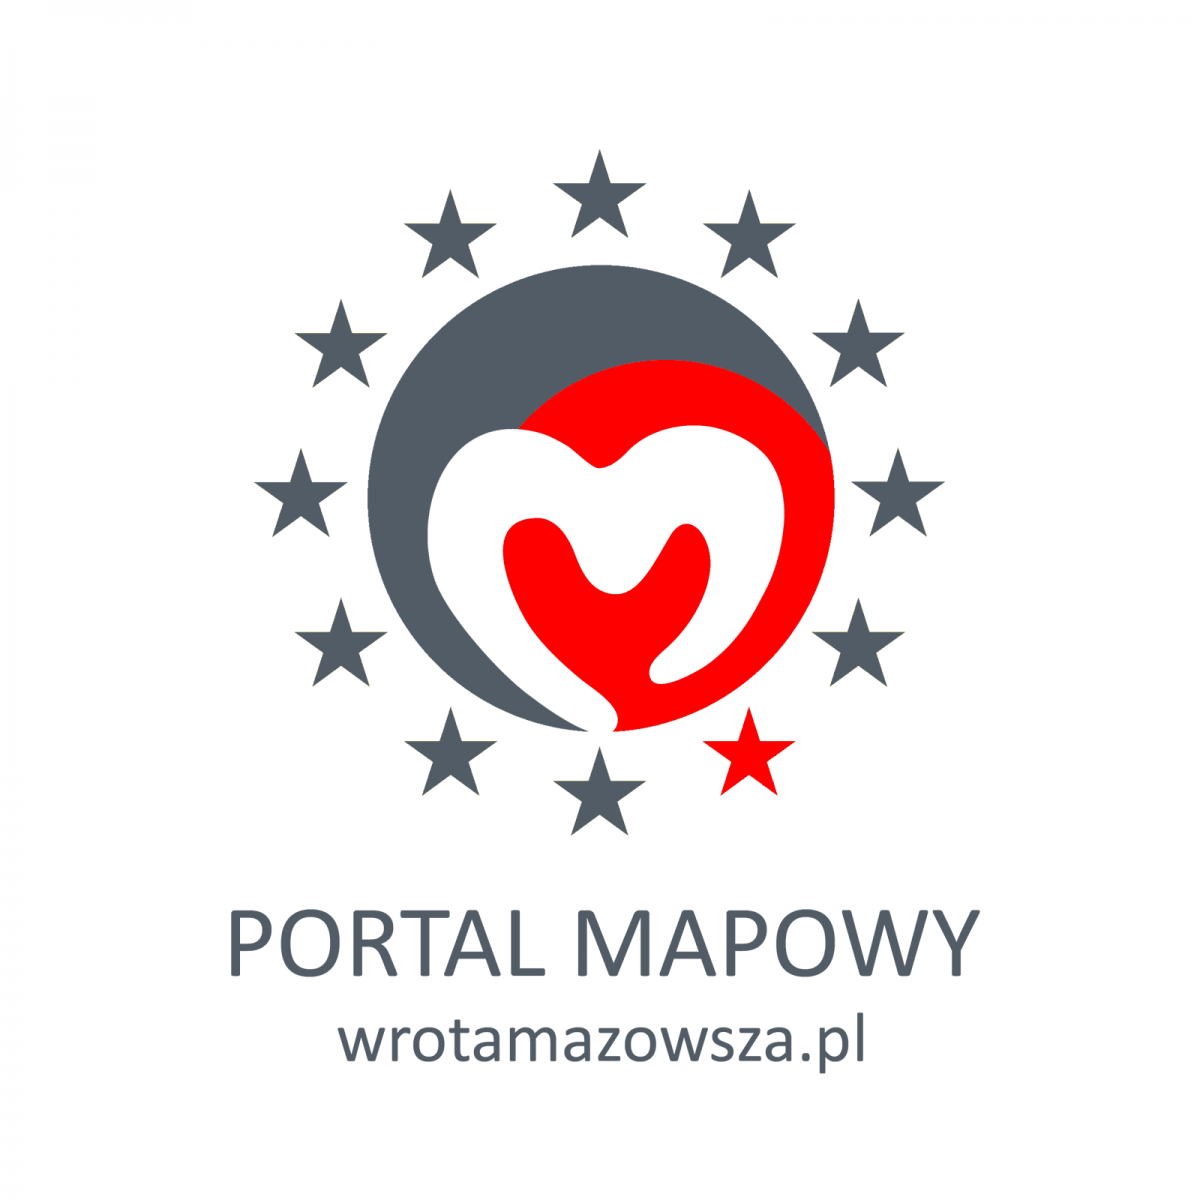 Portal Mapowy Wrota Mazowsza